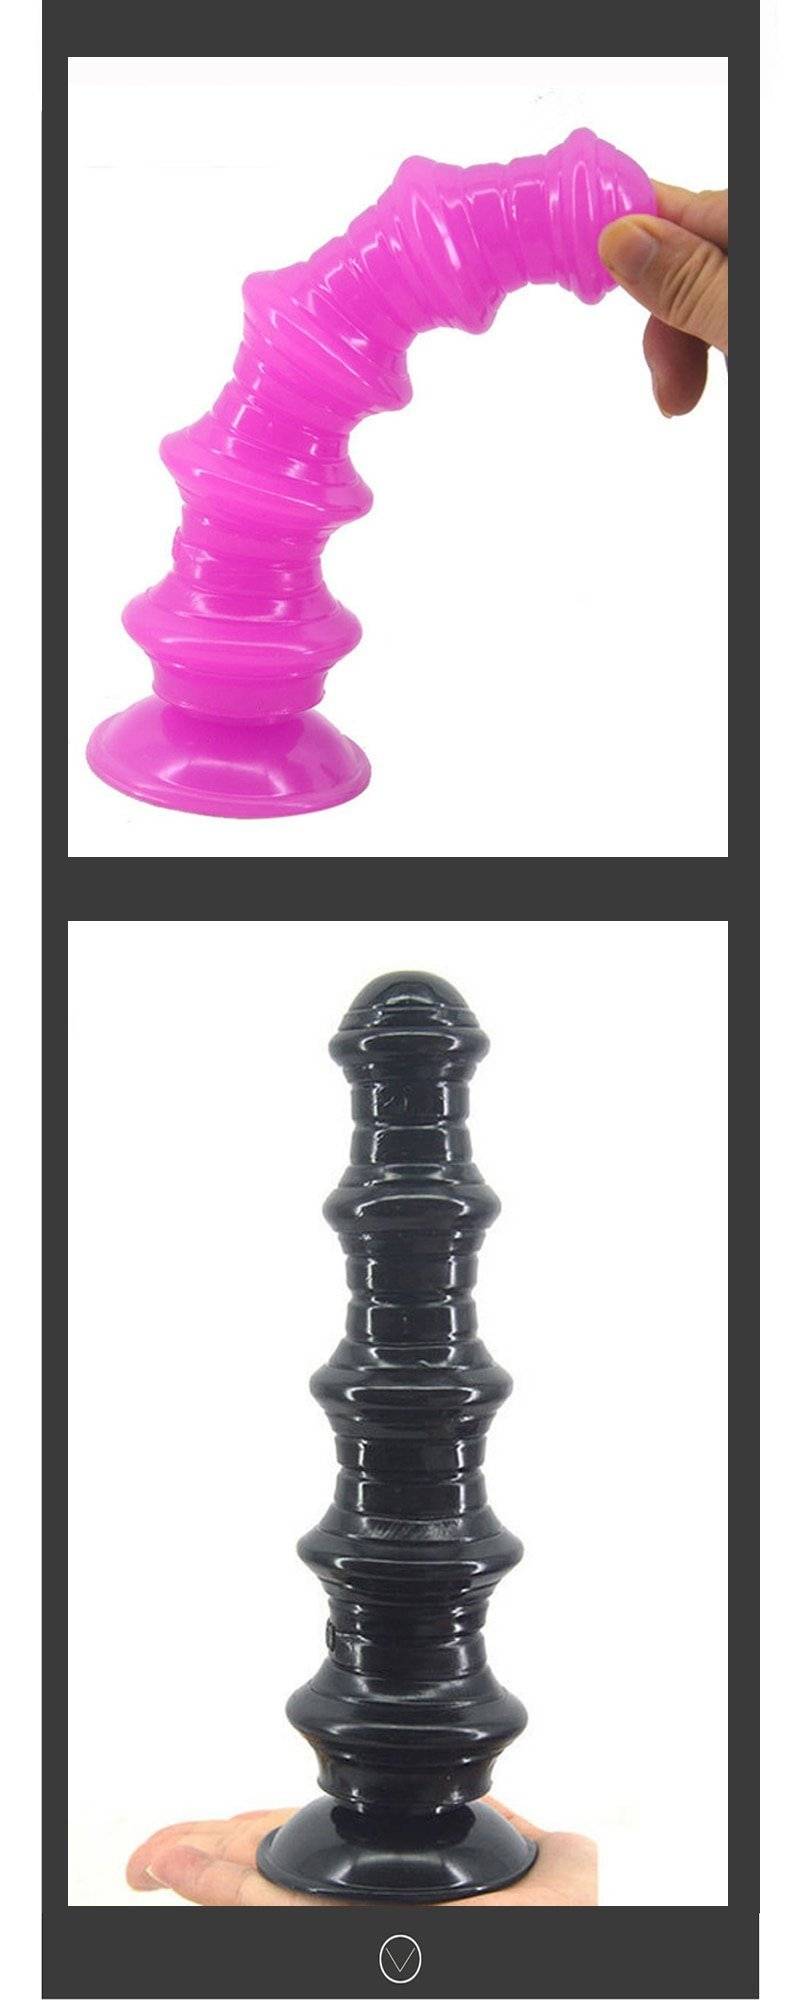 Chgd27 pagoda anal brinquedo sexual, feminino com ventosa forte, dildo para inserir vagina, brinquedo emocional para sexo adulto